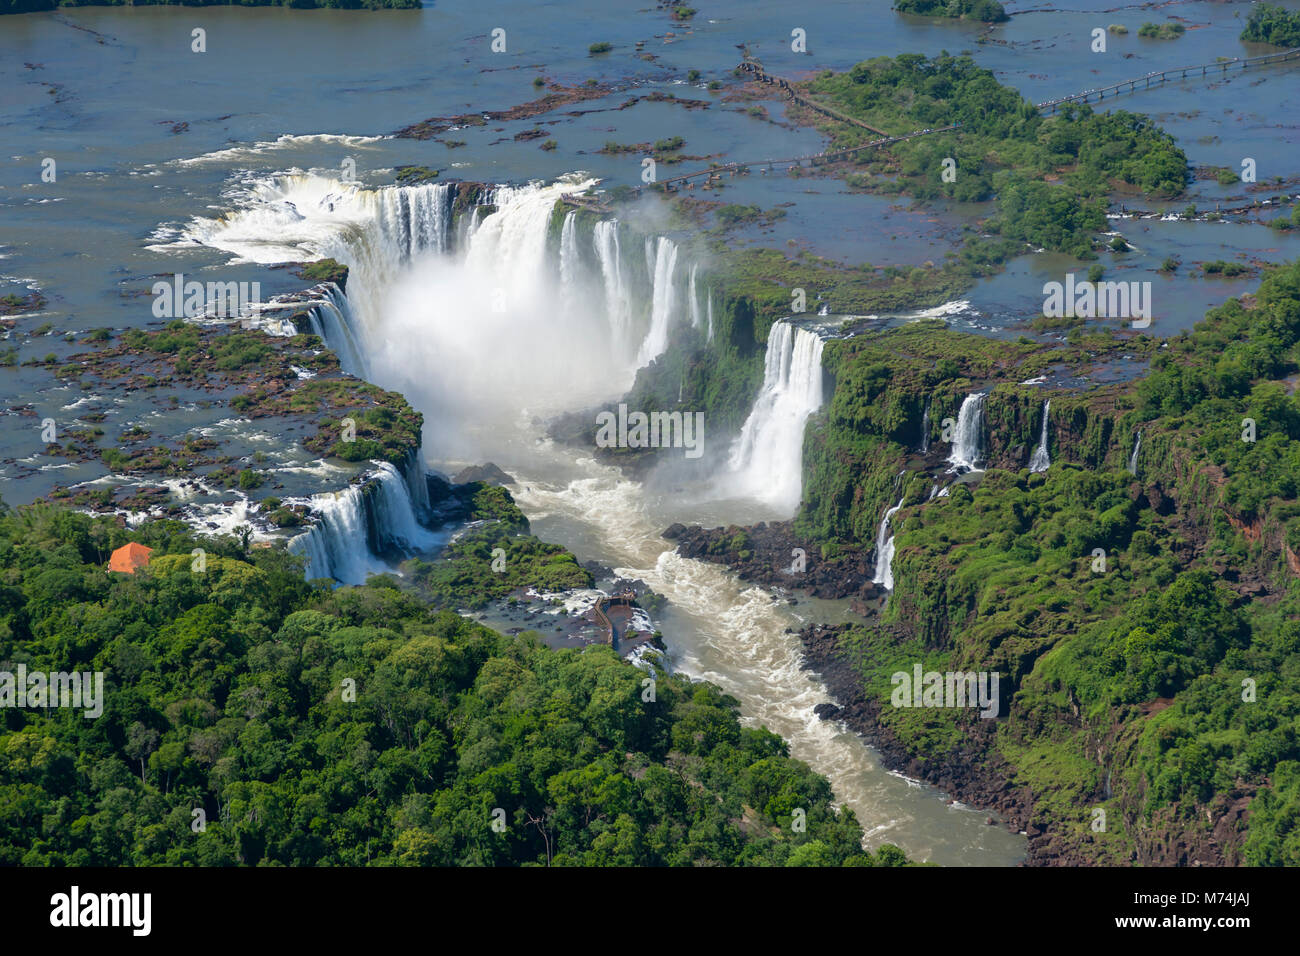 Pan aérienne scenic chutes d'Iguaçu chutes d'eau, rivière, sentier de la promenade minuscule taille ajoute perspective, border Brésil Argentine site du patrimoine mondial de l'UNESCO Banque D'Images